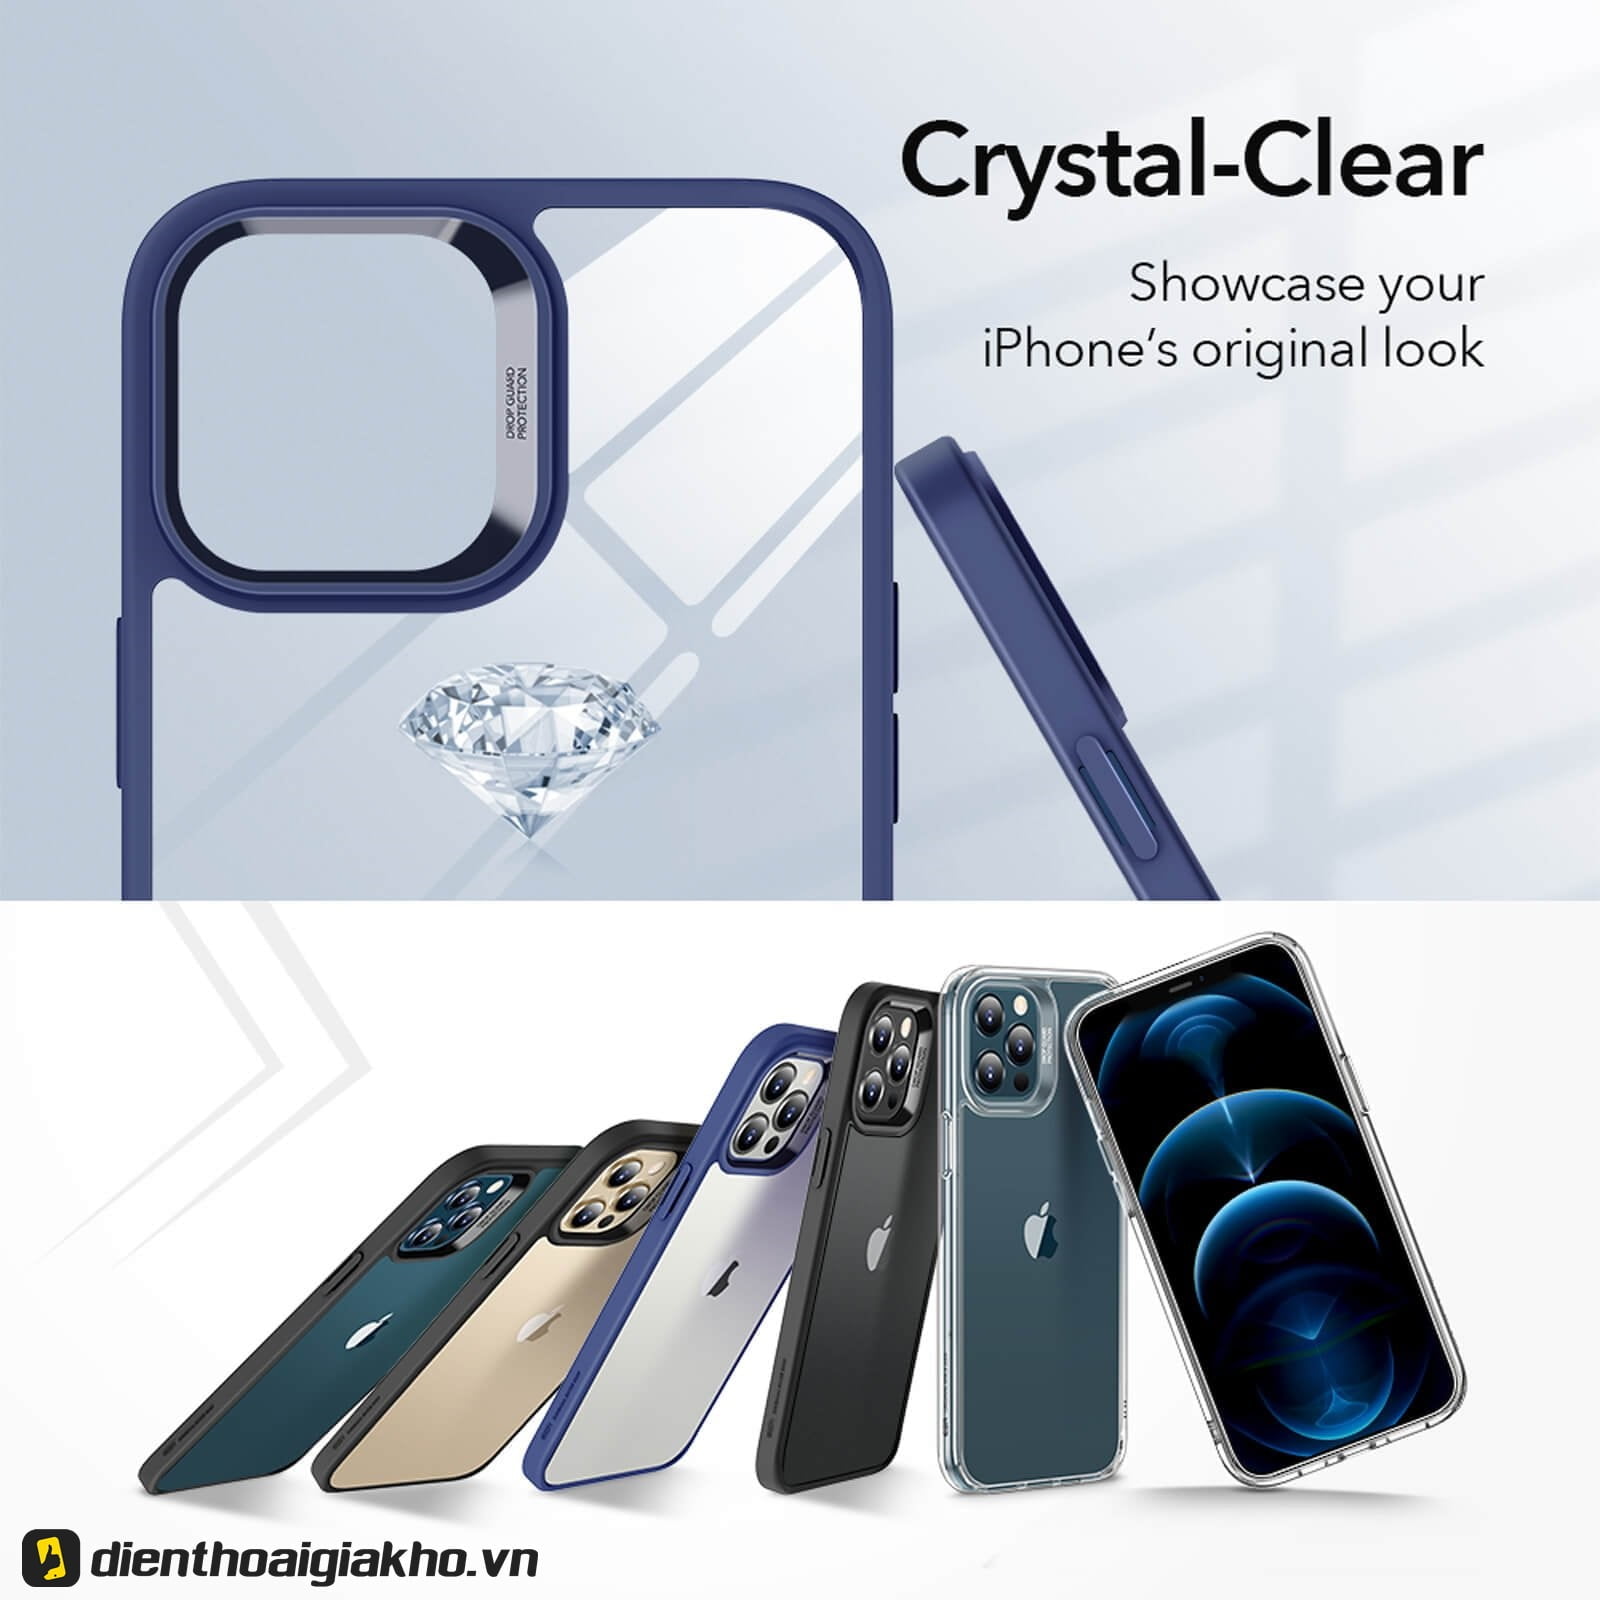 Ốp lưng iPhone 12 Pro Max ESR Classic Hybrid sử dụng công nghệ Crystal Clear độc quyền 